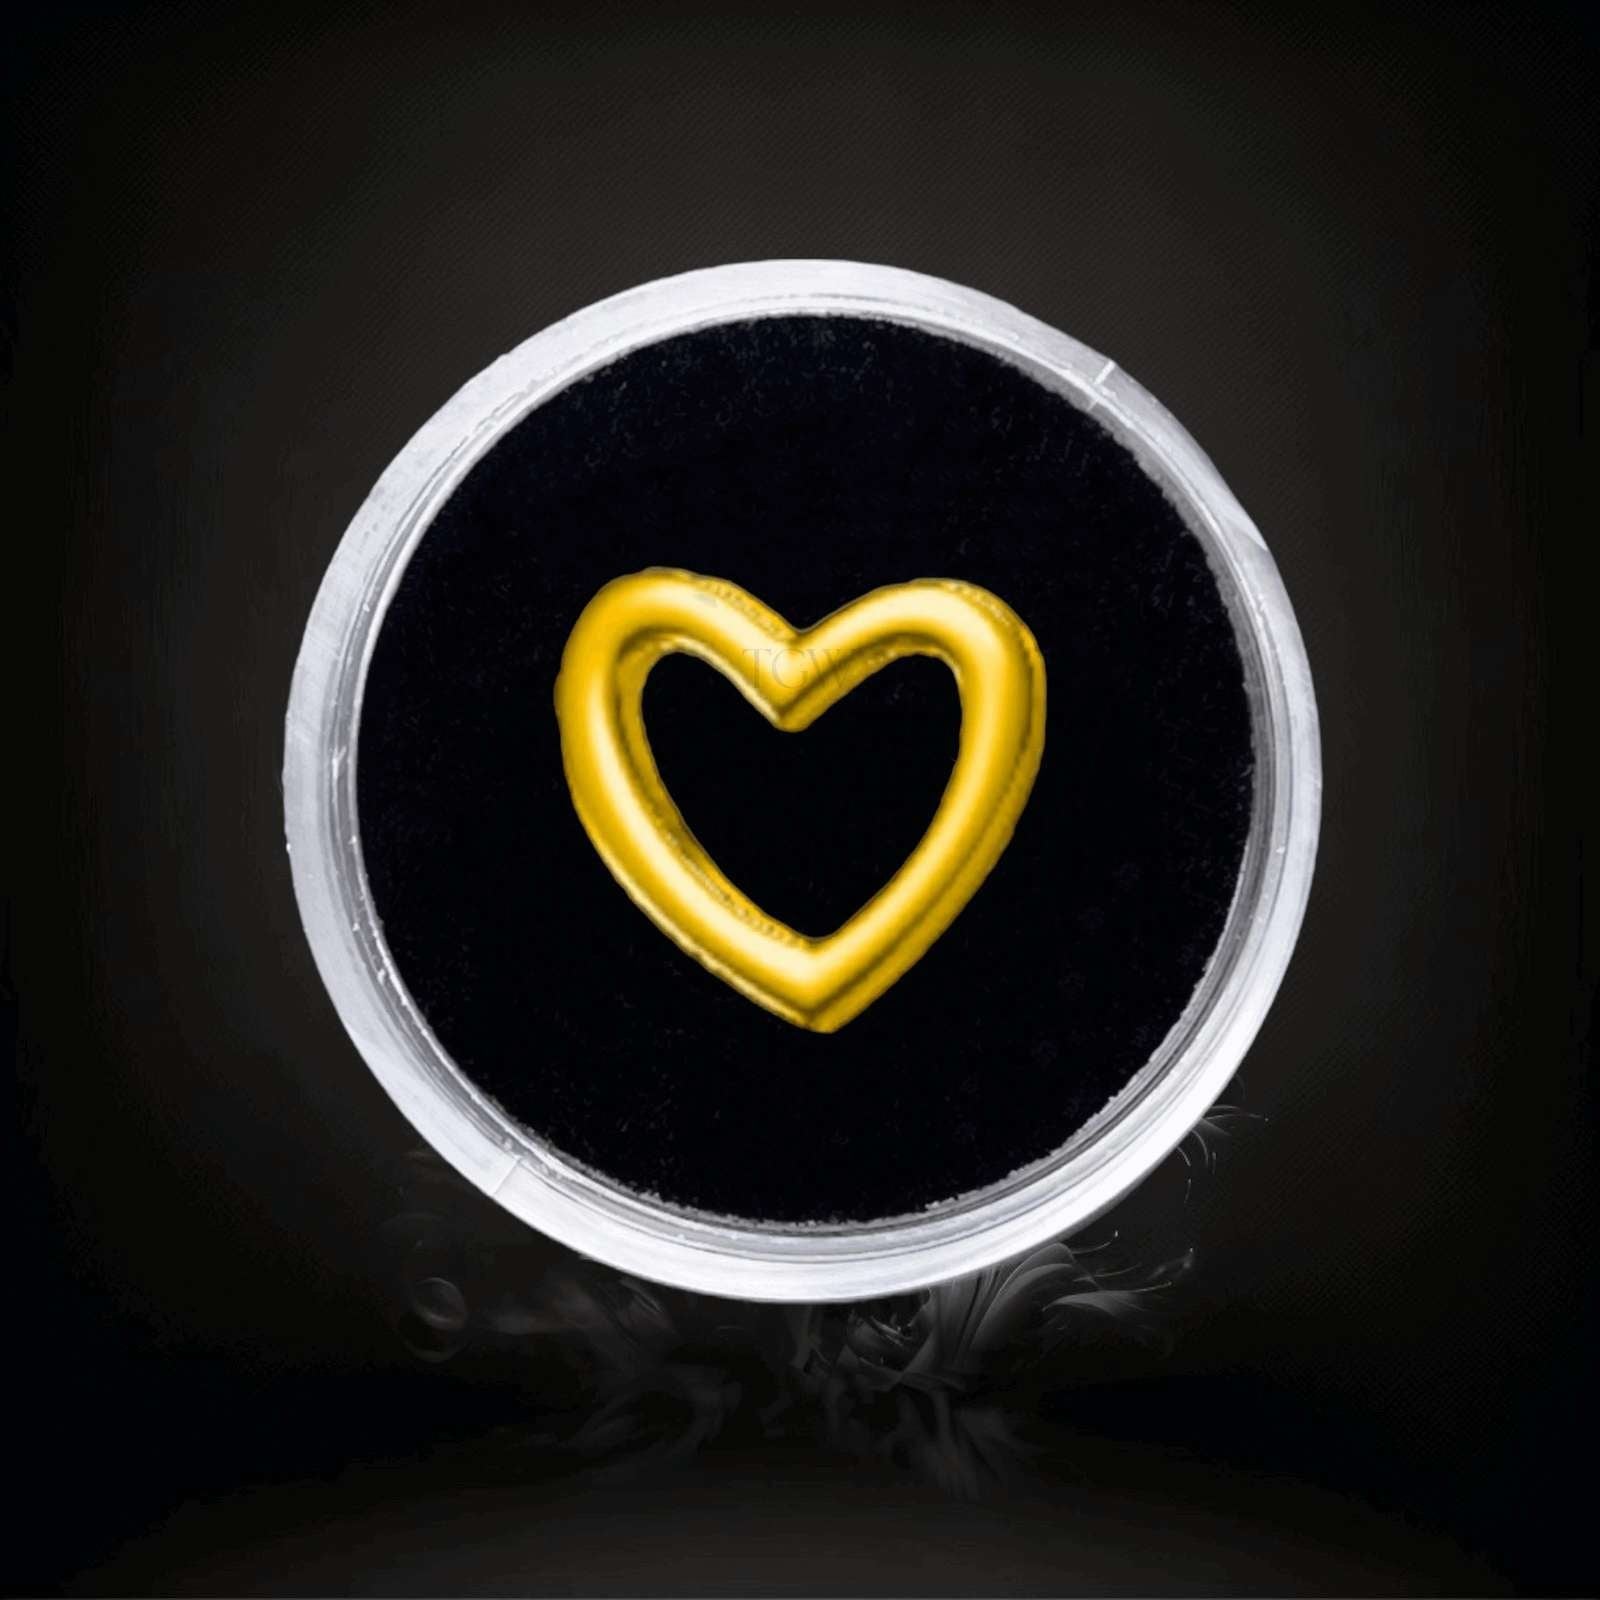 Design : Coeur en contour  Couleur :    Or jaune Matériel : Or 18 carats   Dimensions : 4.6x5mm  Épaisseur ：0.5mm